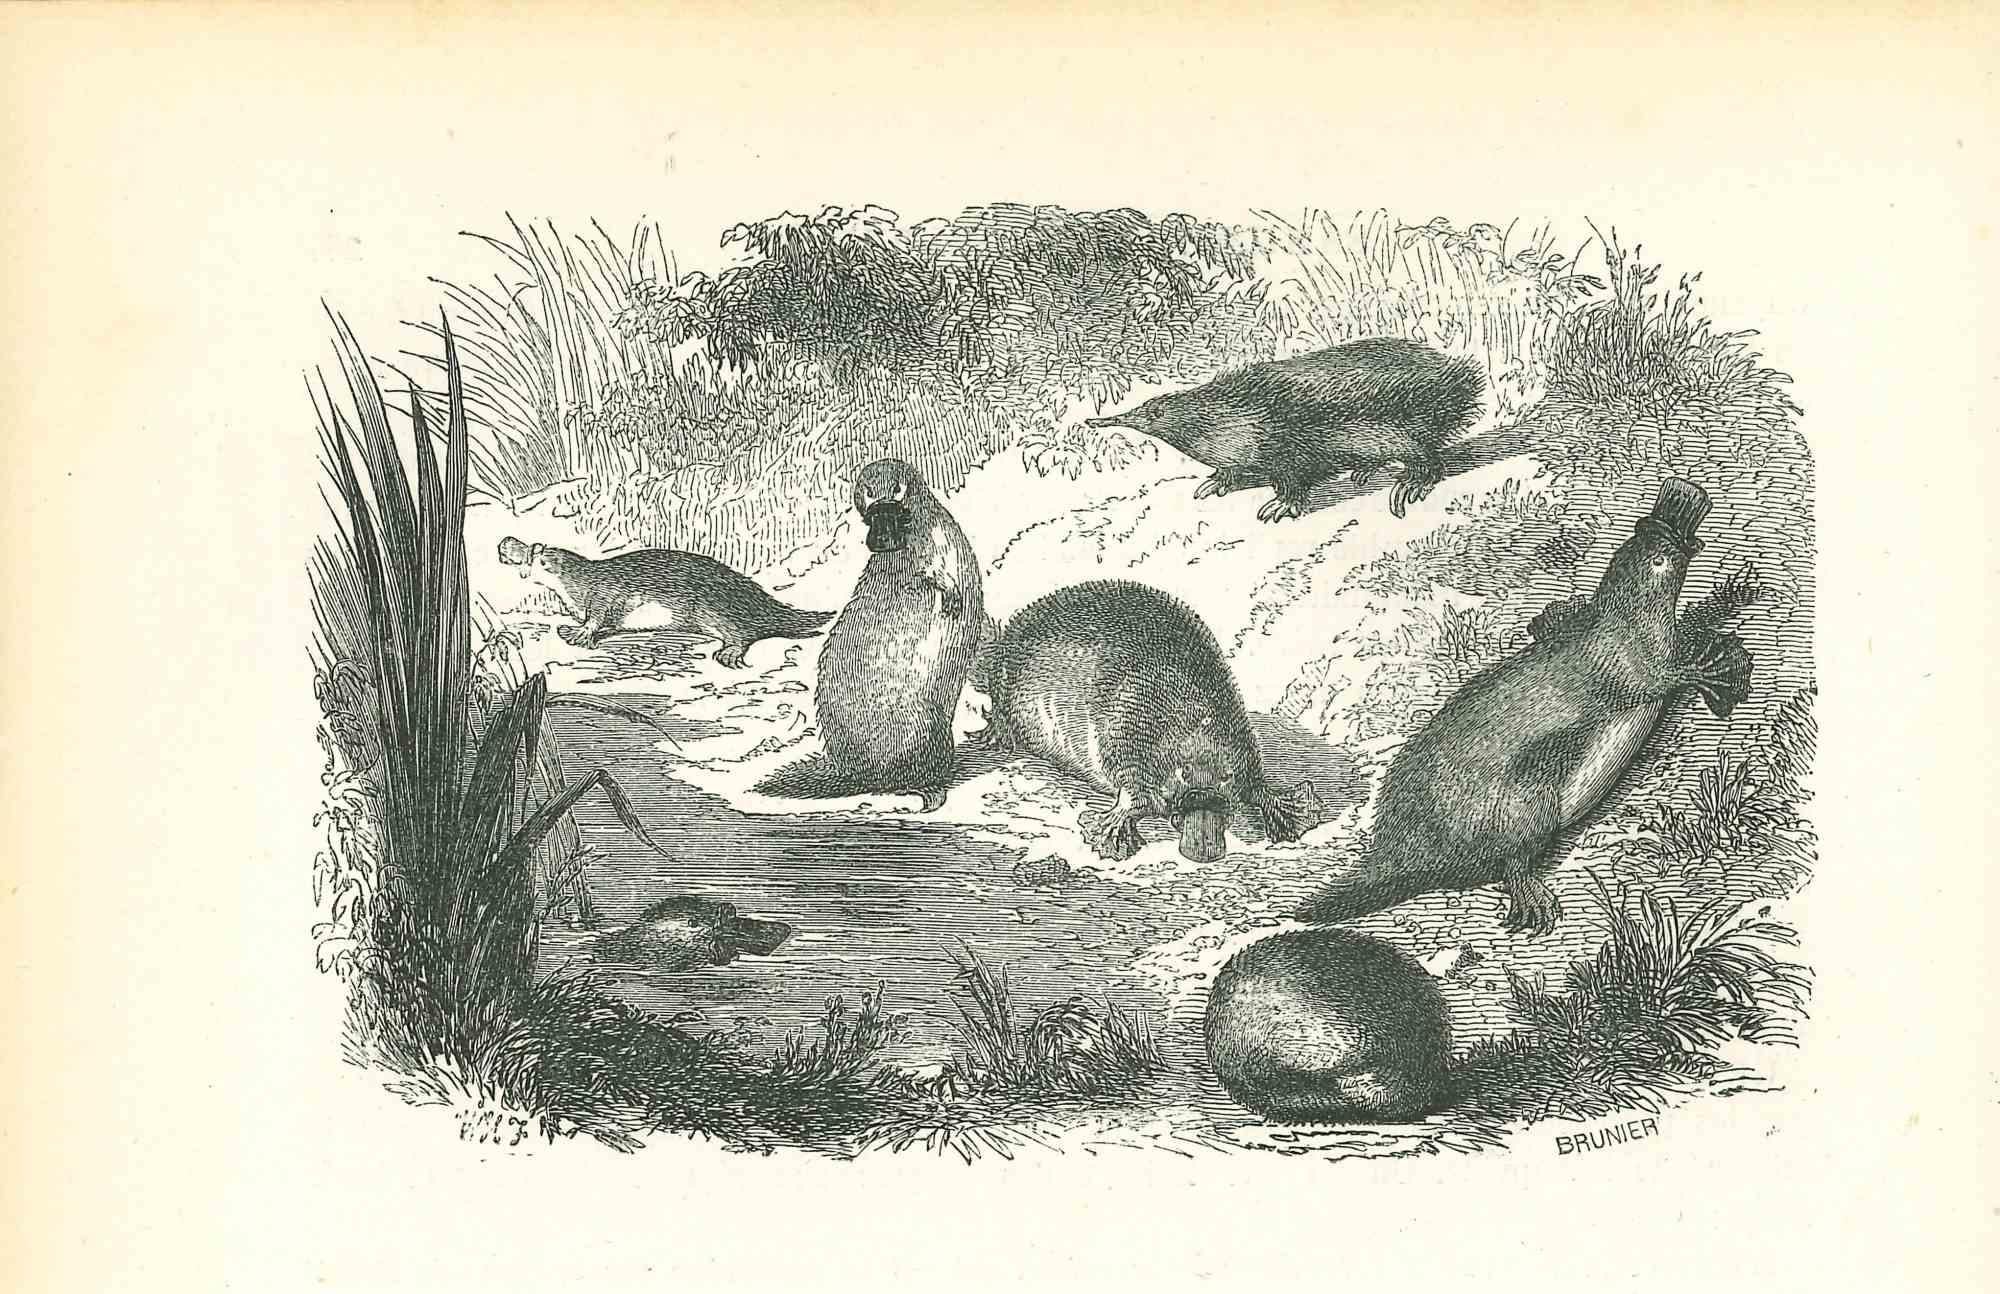 Animaux sur le rivage est une lithographie originale sur papier couleur ivoire, réalisée par Paul Gervais (1816-1879). L'œuvre est tirée de la série "Les Trois Règnes de la Nature", et a été publiée en 1854.

Bonnes conditions.

Titré sur le bas.